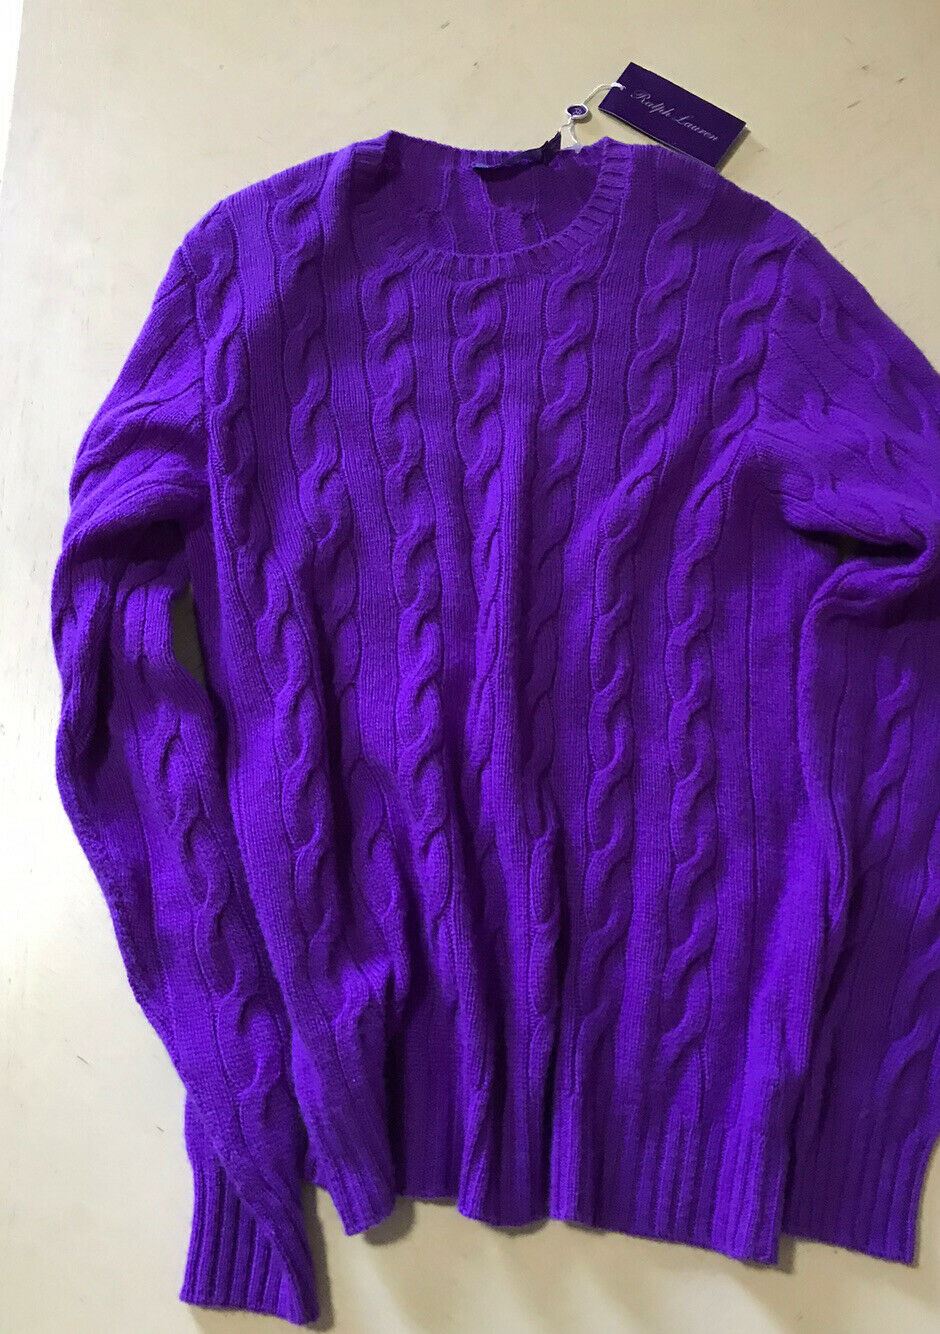 NWT  $995 Ralph Lauren Purple Label Men Cashmere Crewneck Sweater Bright Blue S